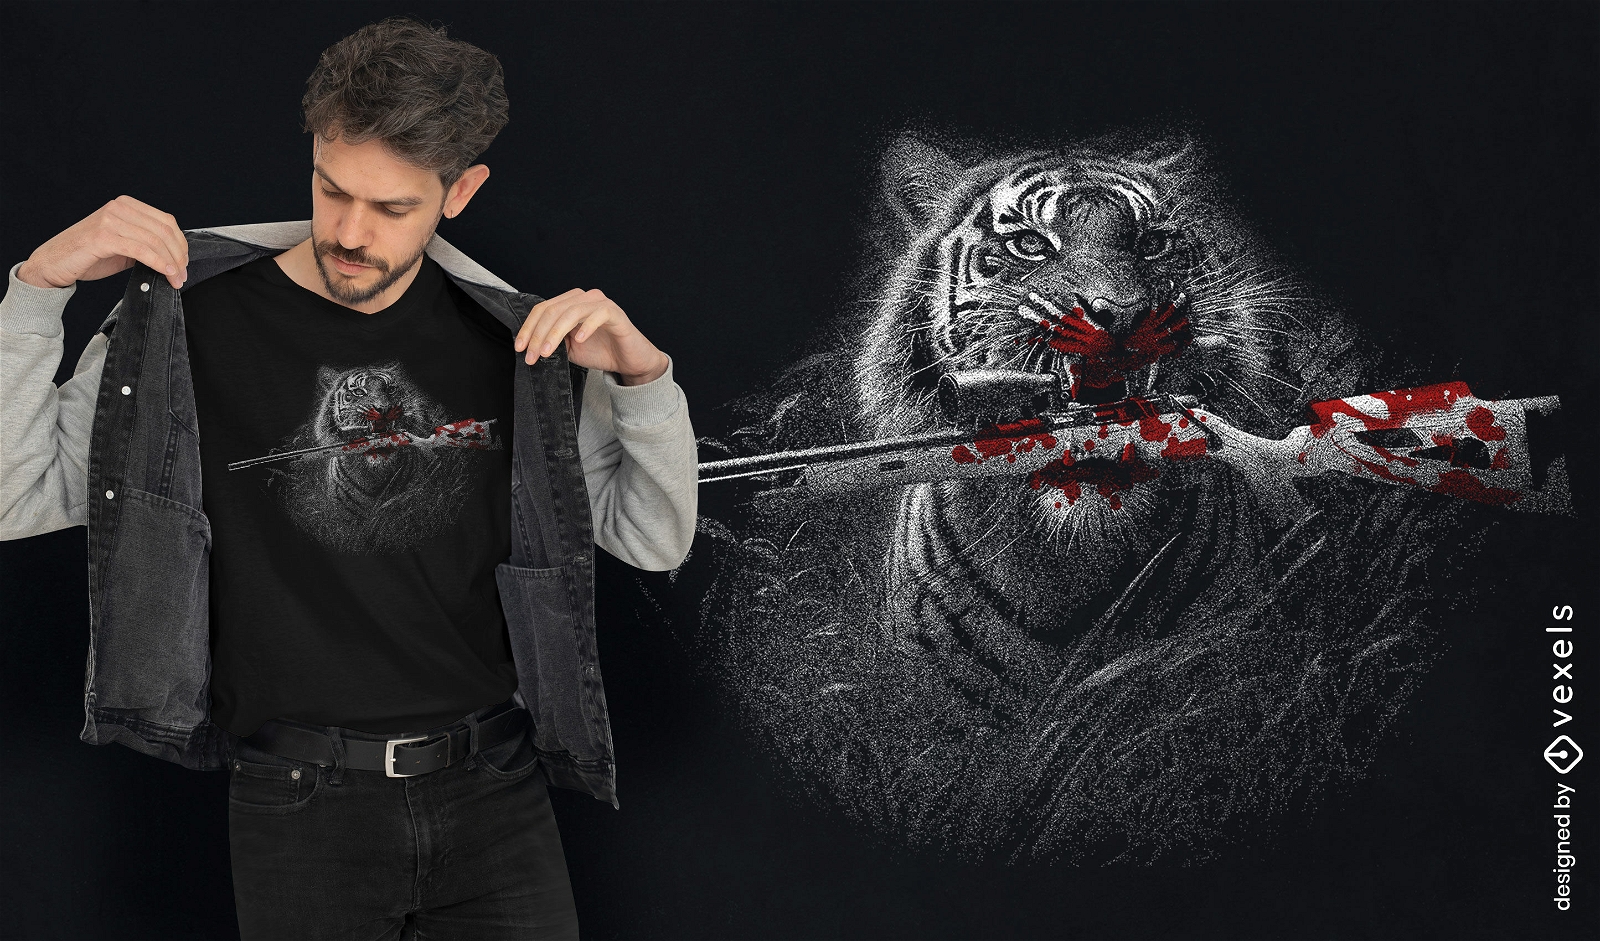 Dise?o de camiseta cazador de tigres.